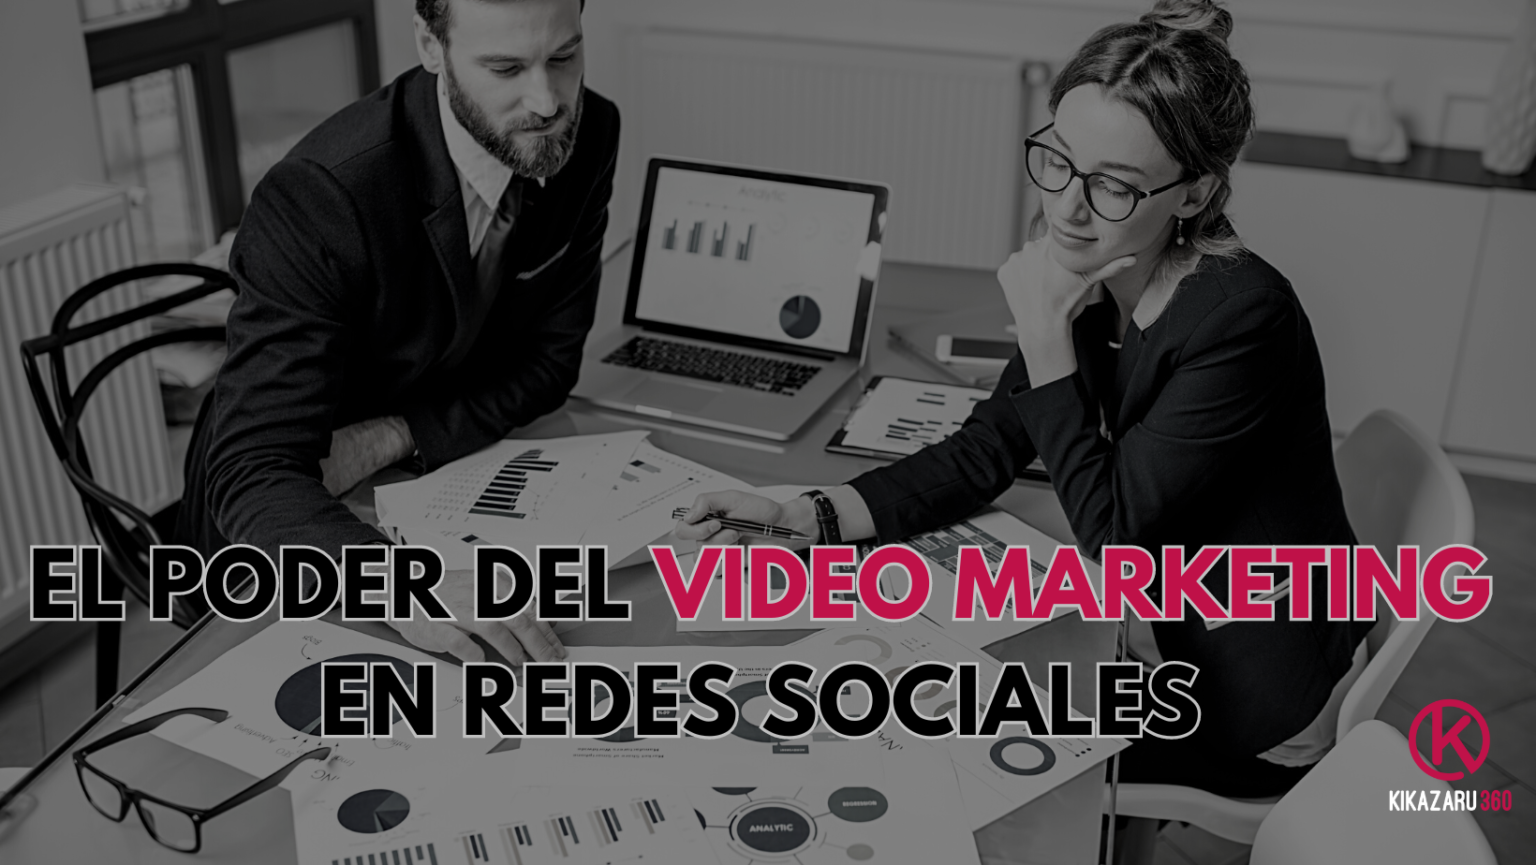 El uso del videomarketing genera más likes, shares y engagement entre los usuarios, y también es recompensado por las plataformas sociales.